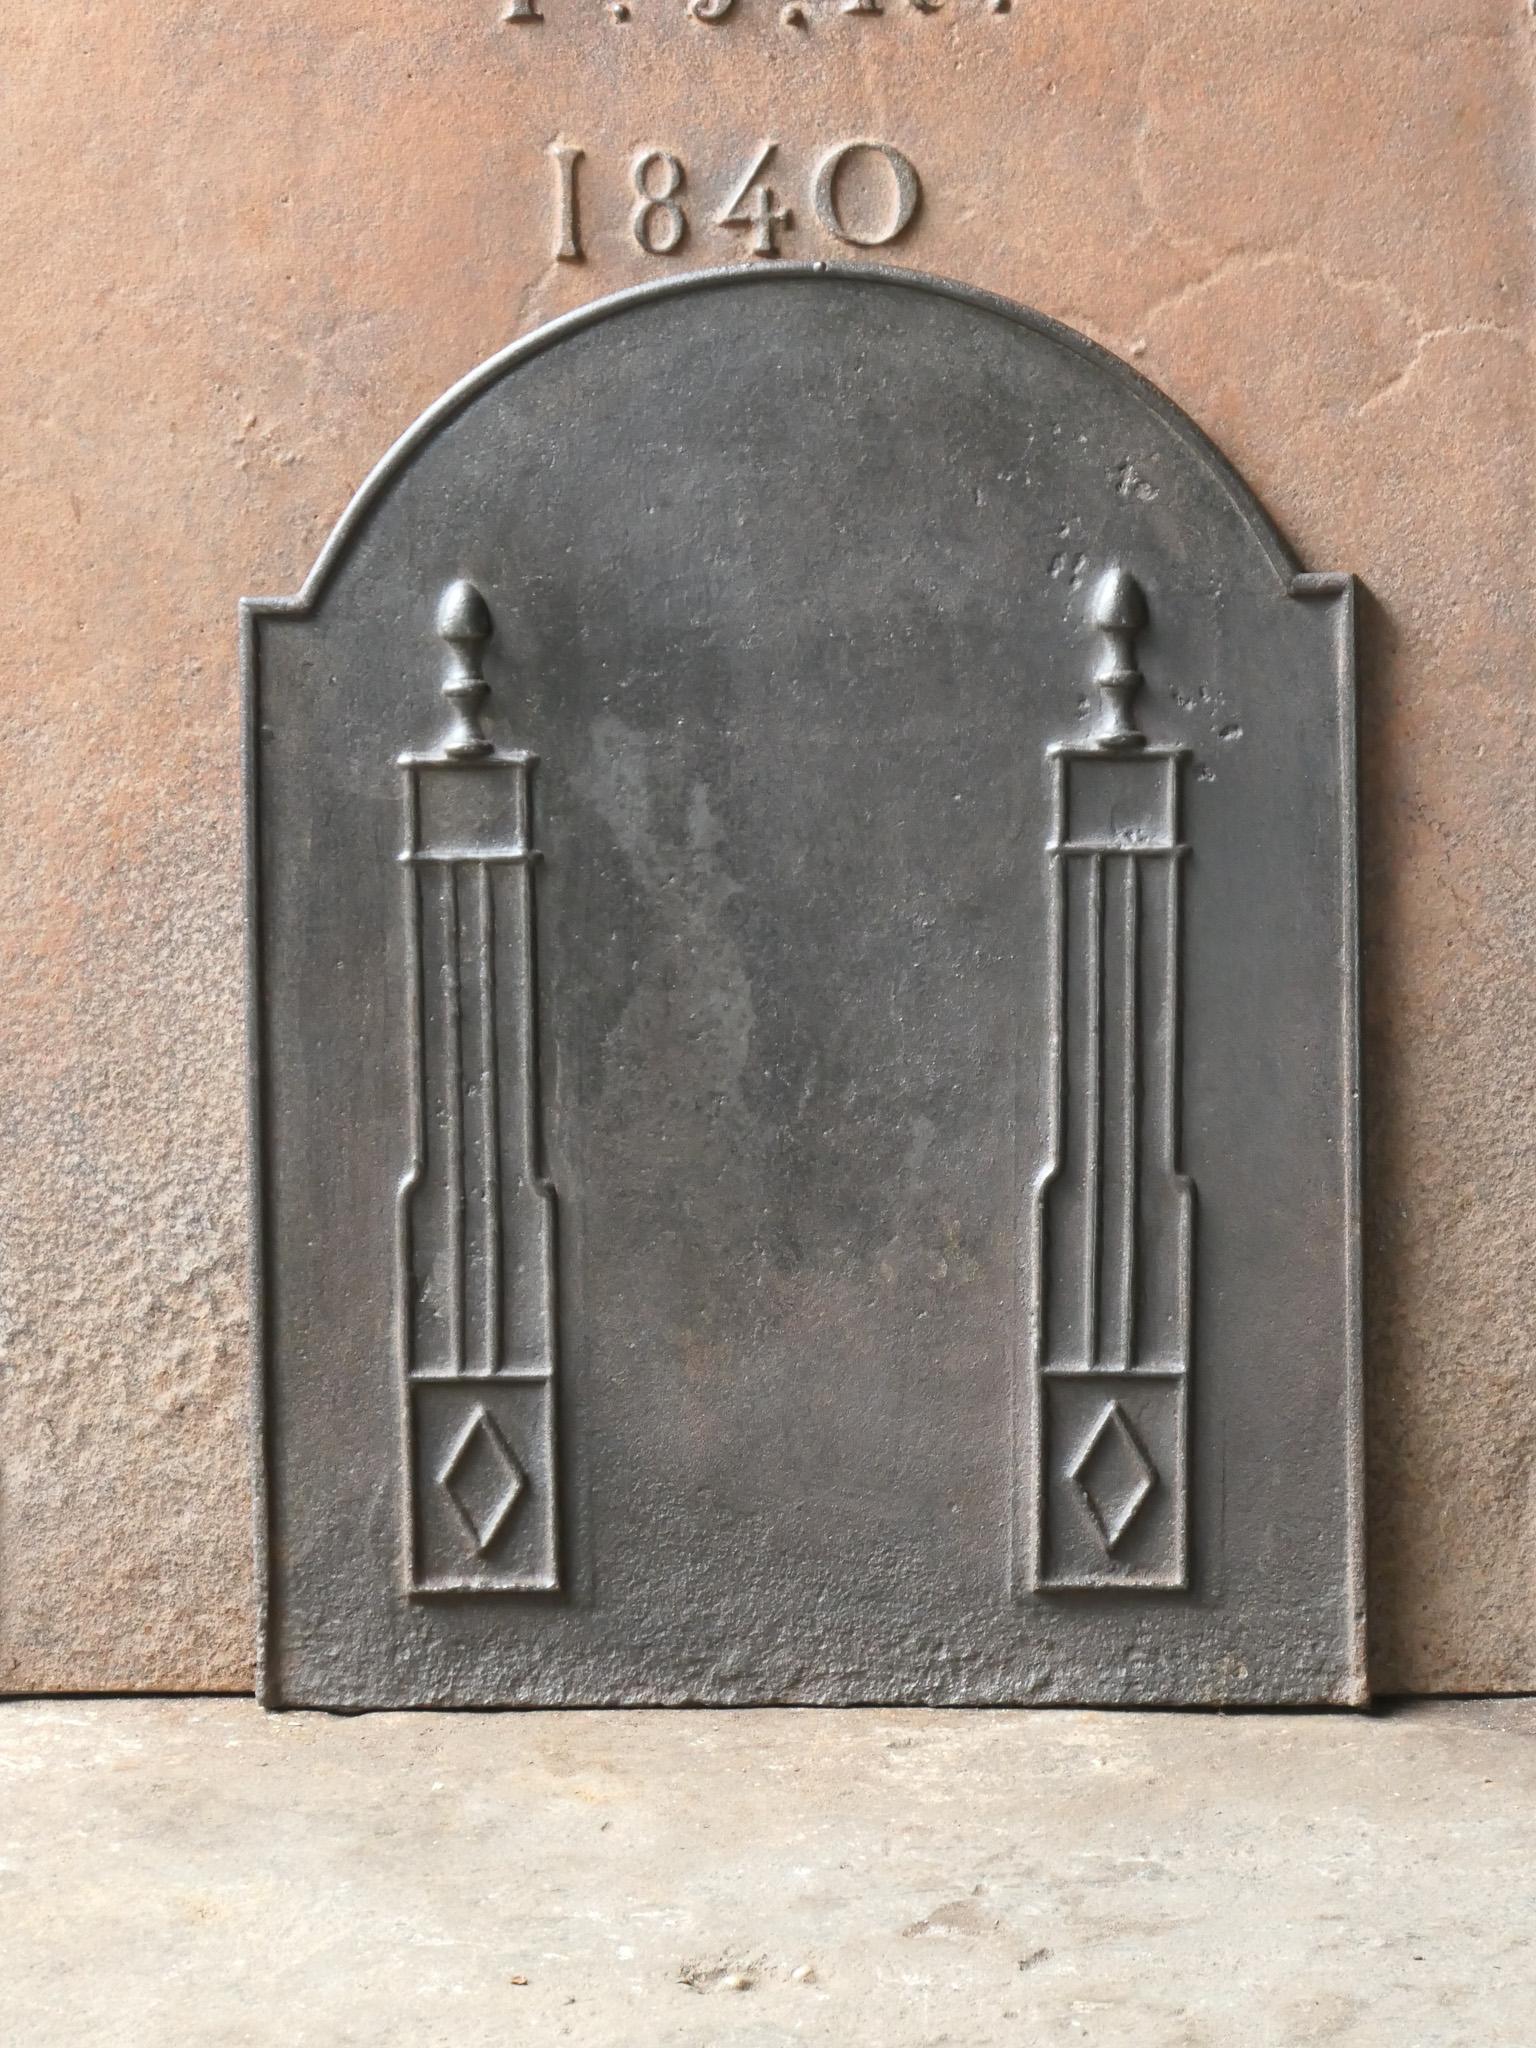 Plaque de cheminée néoclassique française du 18e - 19e siècle avec deux piliers de la liberté. Les piliers symbolisent la valeur liberté, l'une des trois valeurs de la Révolution française. 

La plaque de cheminée est en fonte et a une patine